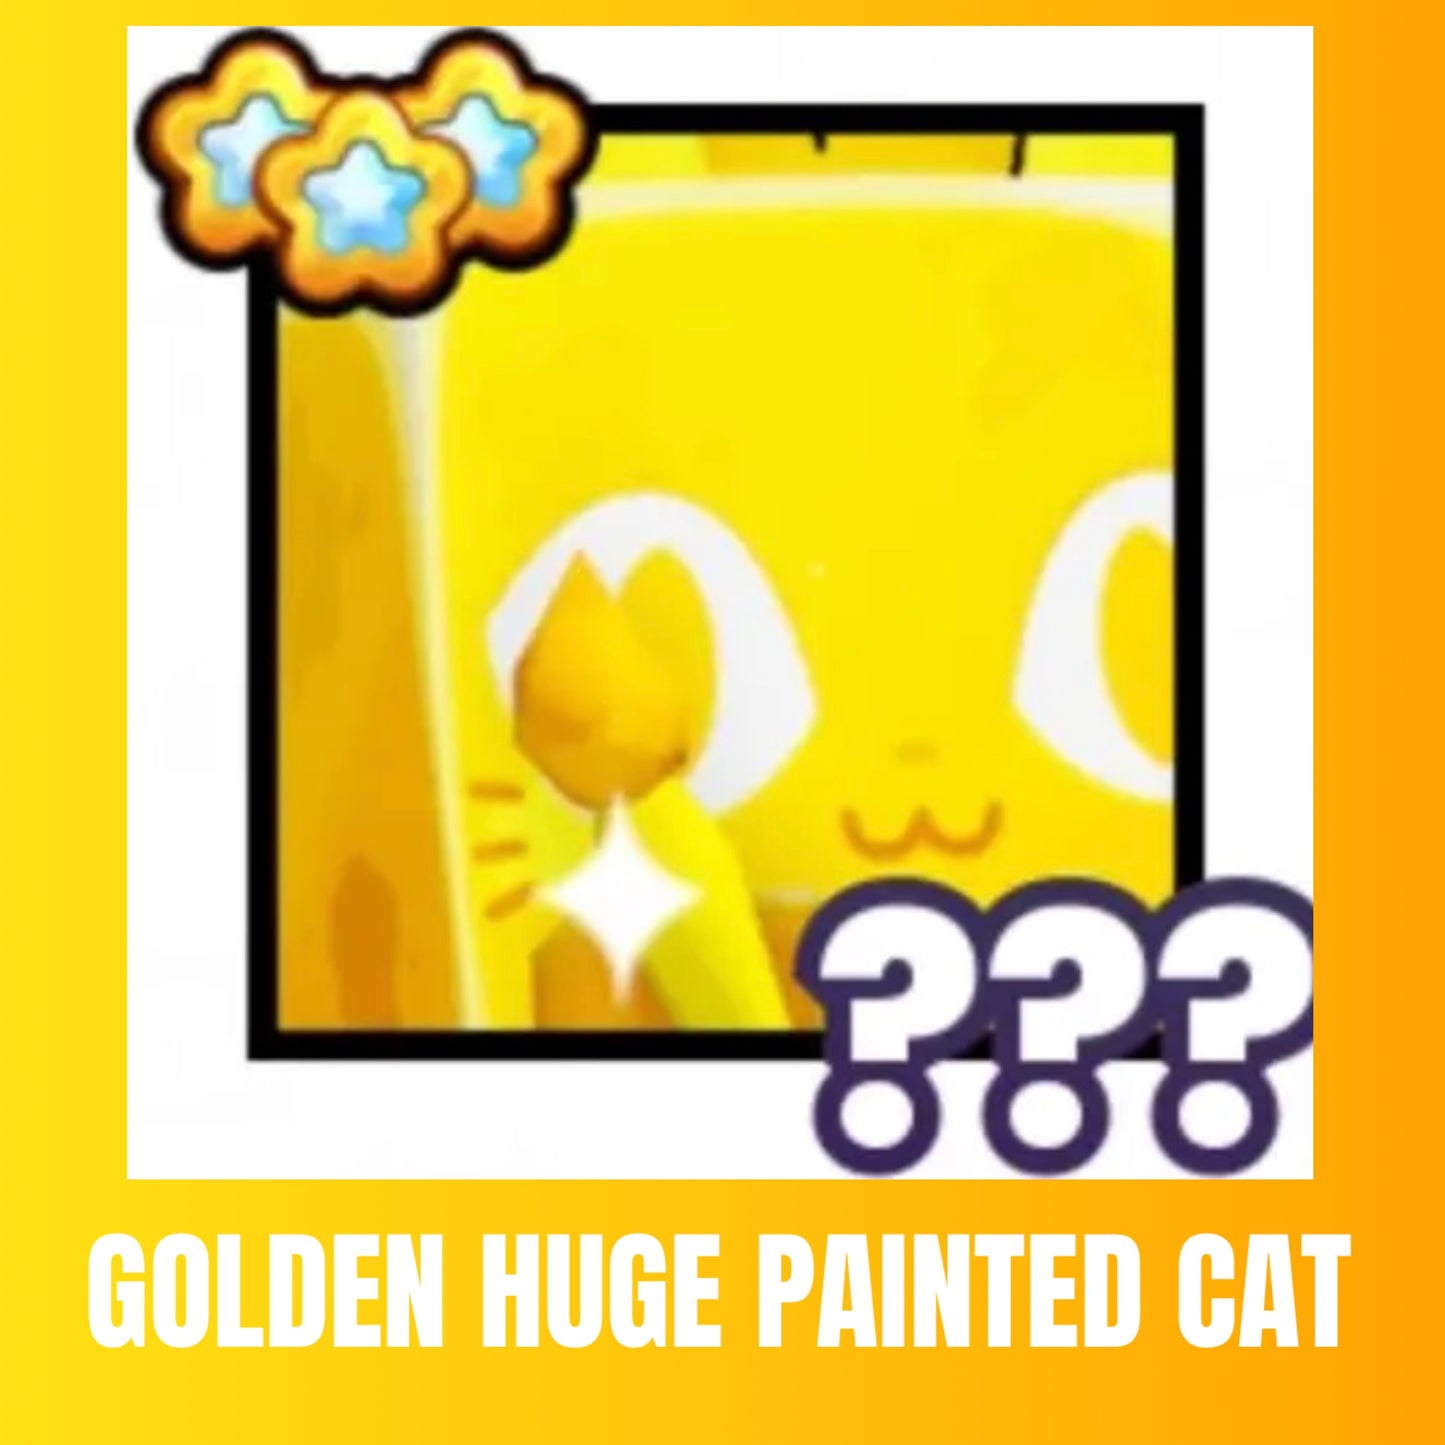 Golden Huge Painted Cat